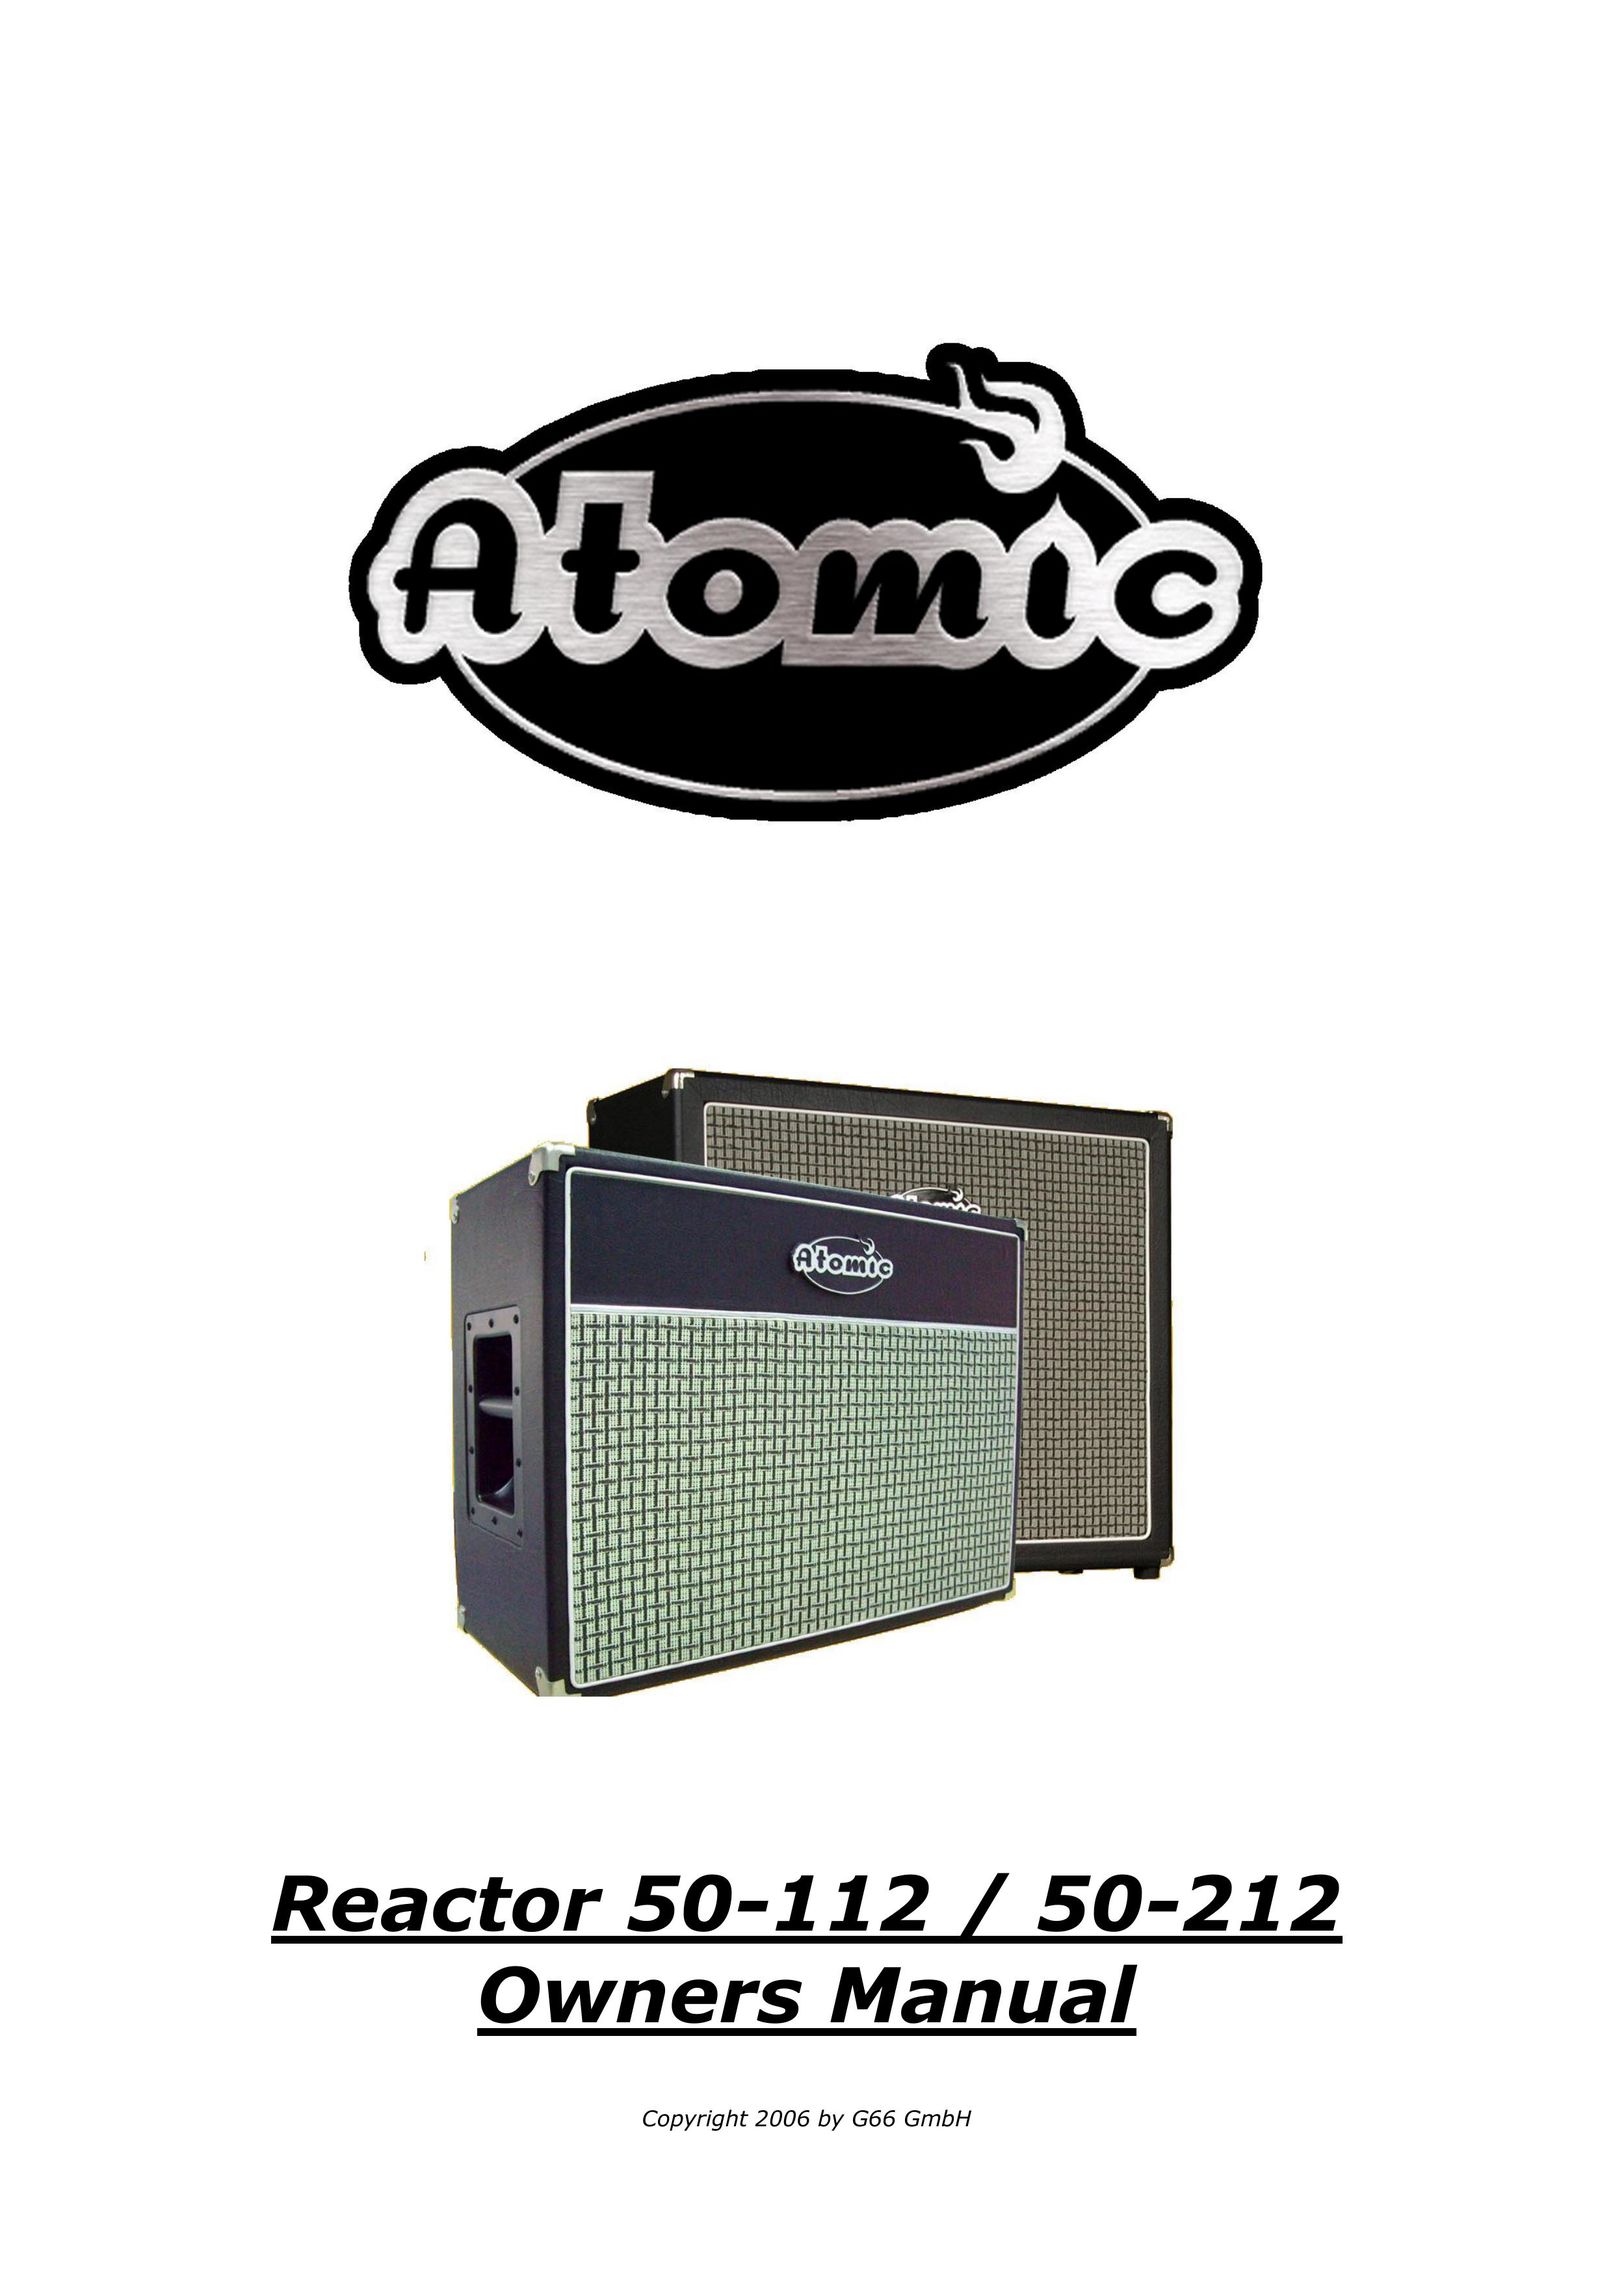 Atomic 50-212 Freezer User Manual